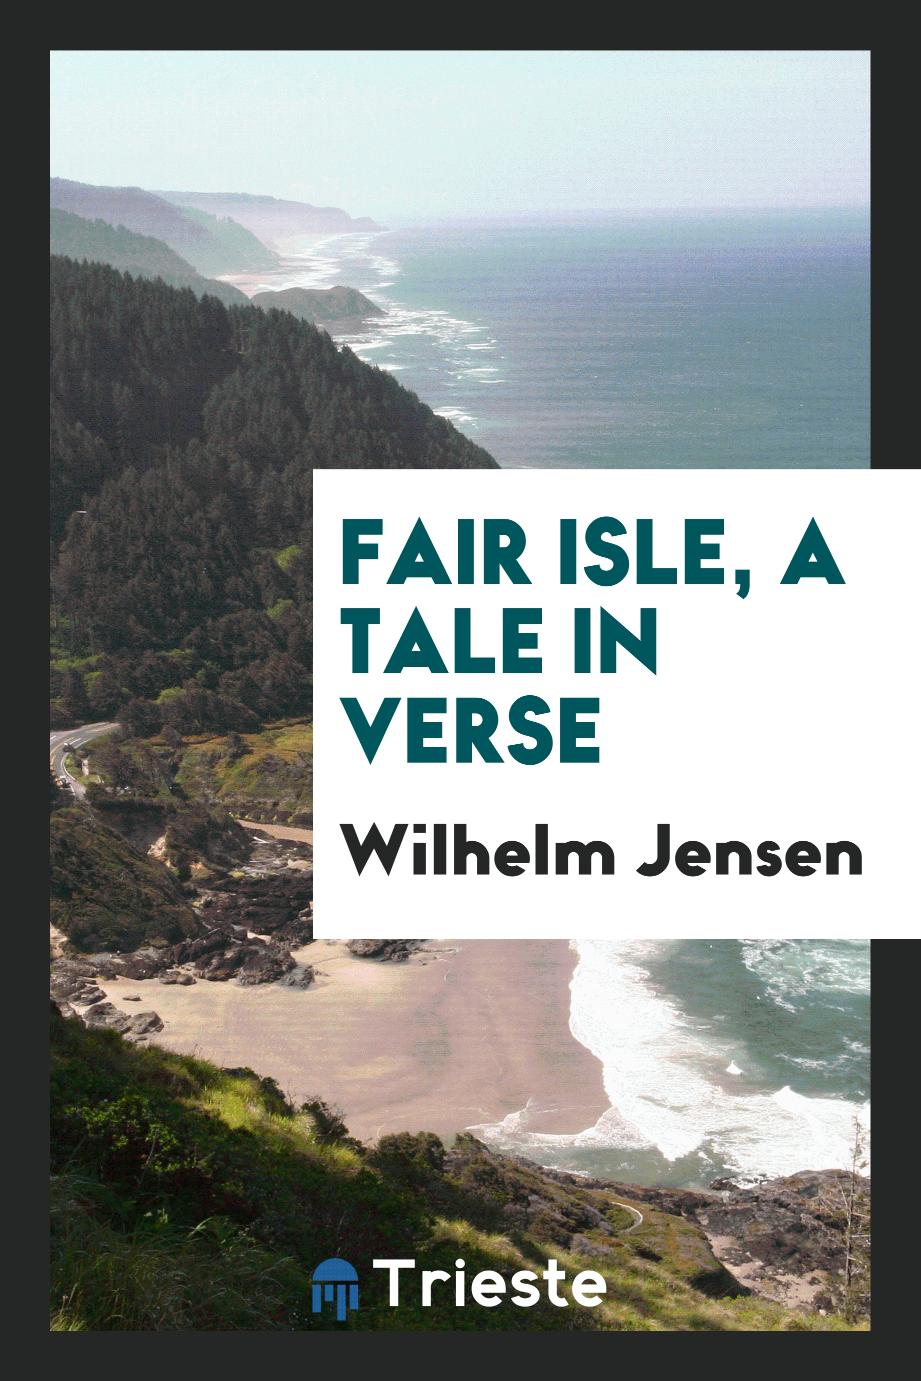 Fair isle, a tale in verse